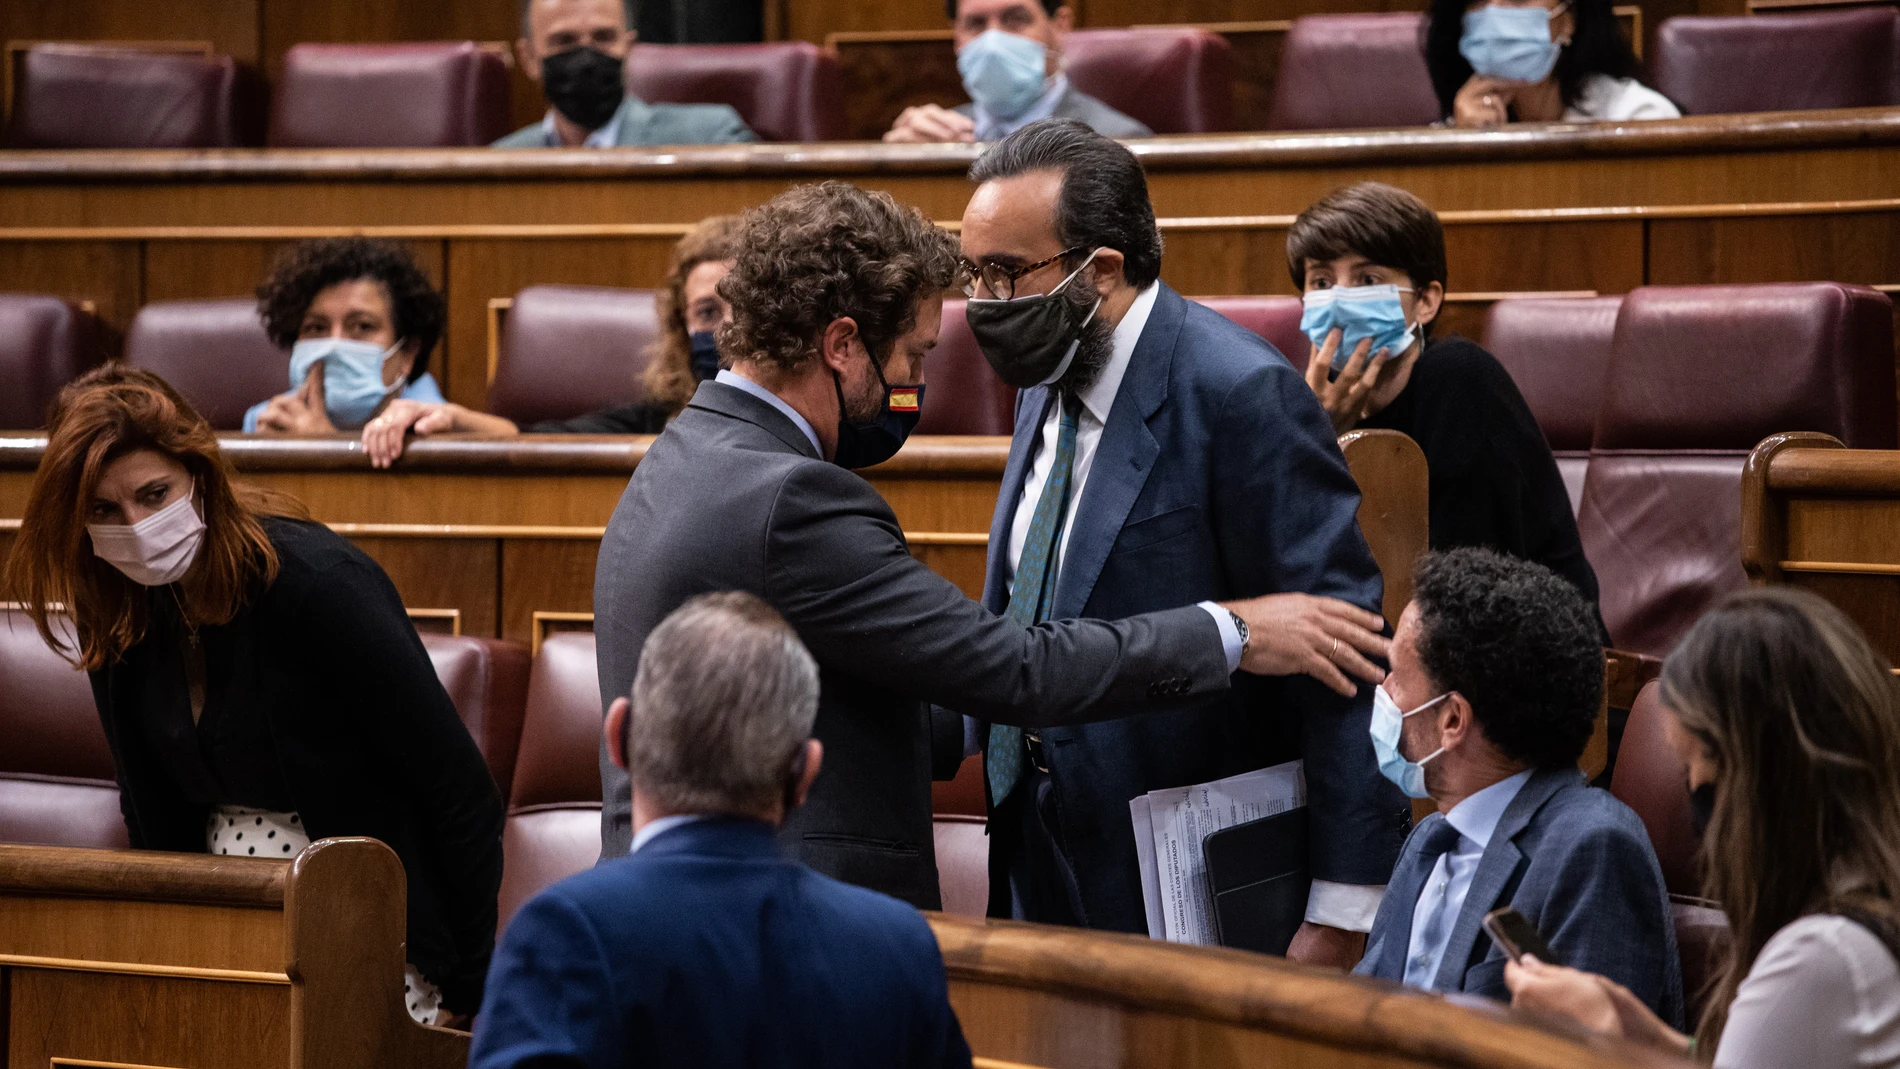 El portavoz de Vox Congreso de los Diputados, Iván Espinosa de los Monteros (i), hace sentar al diputado de VOX, Jose María Sánchez García